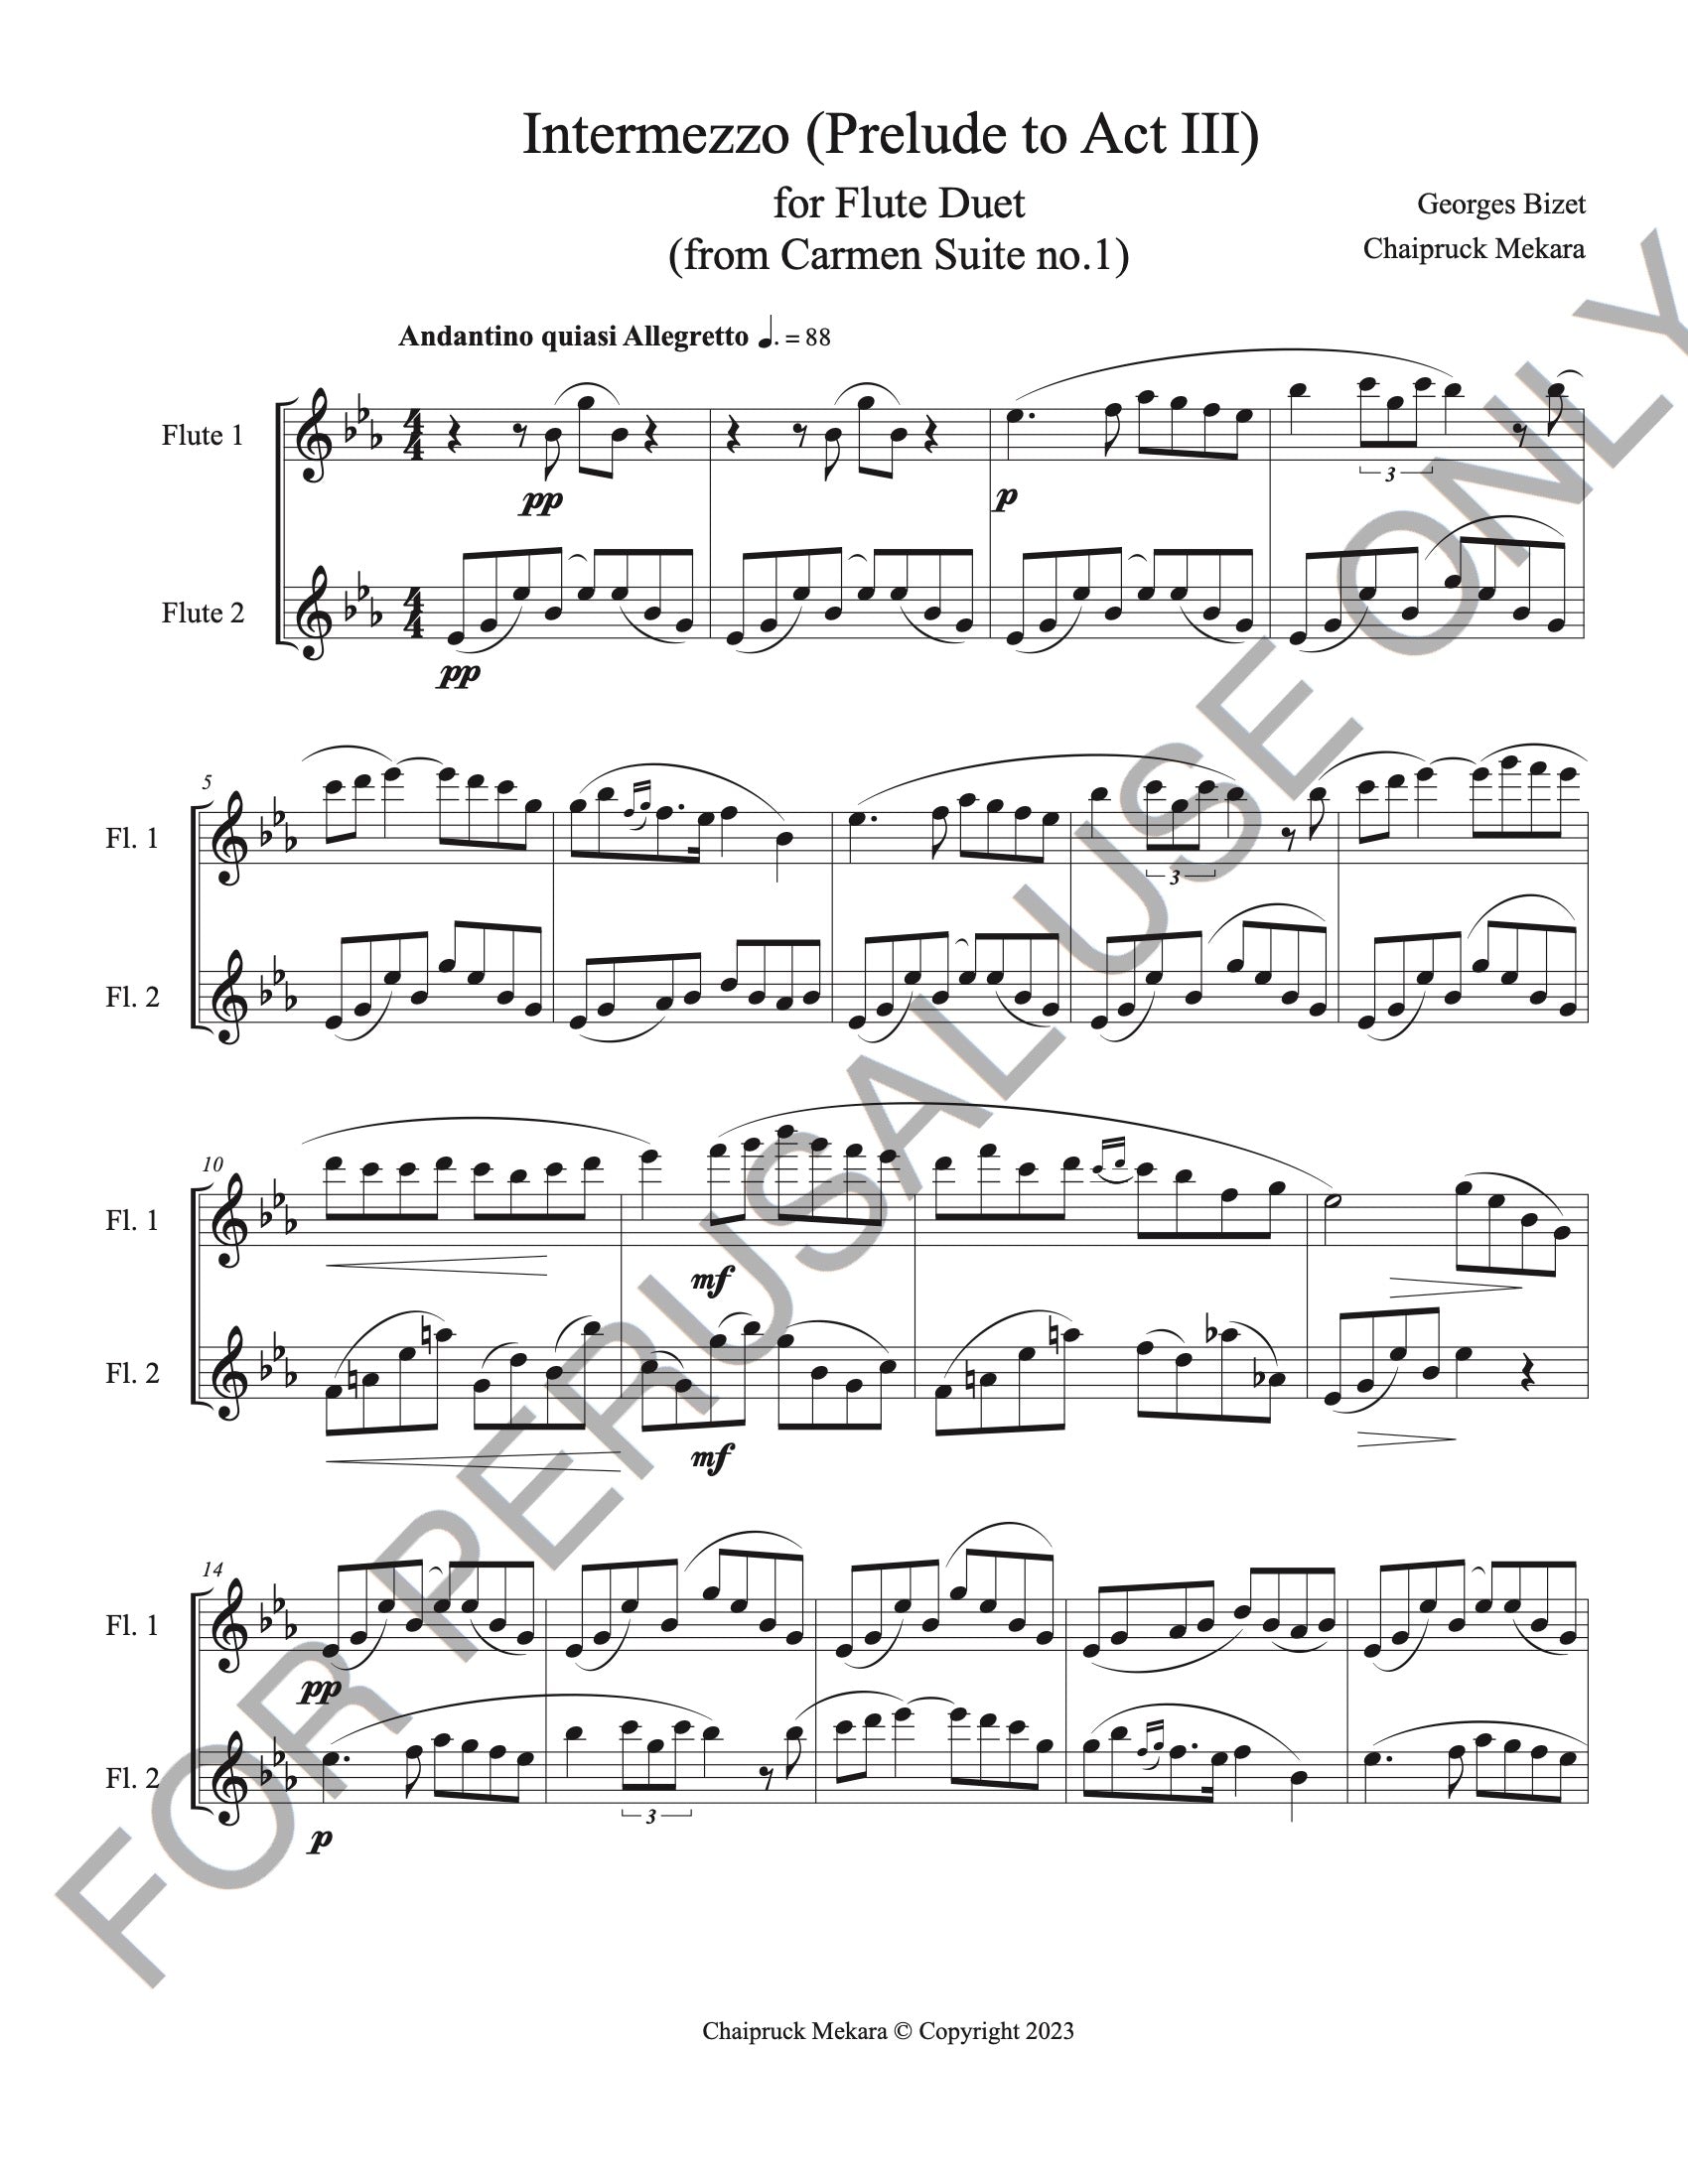 Intermezzo from Carmen Suite no.1 for Flute Duet (Score+Parts+mp3)